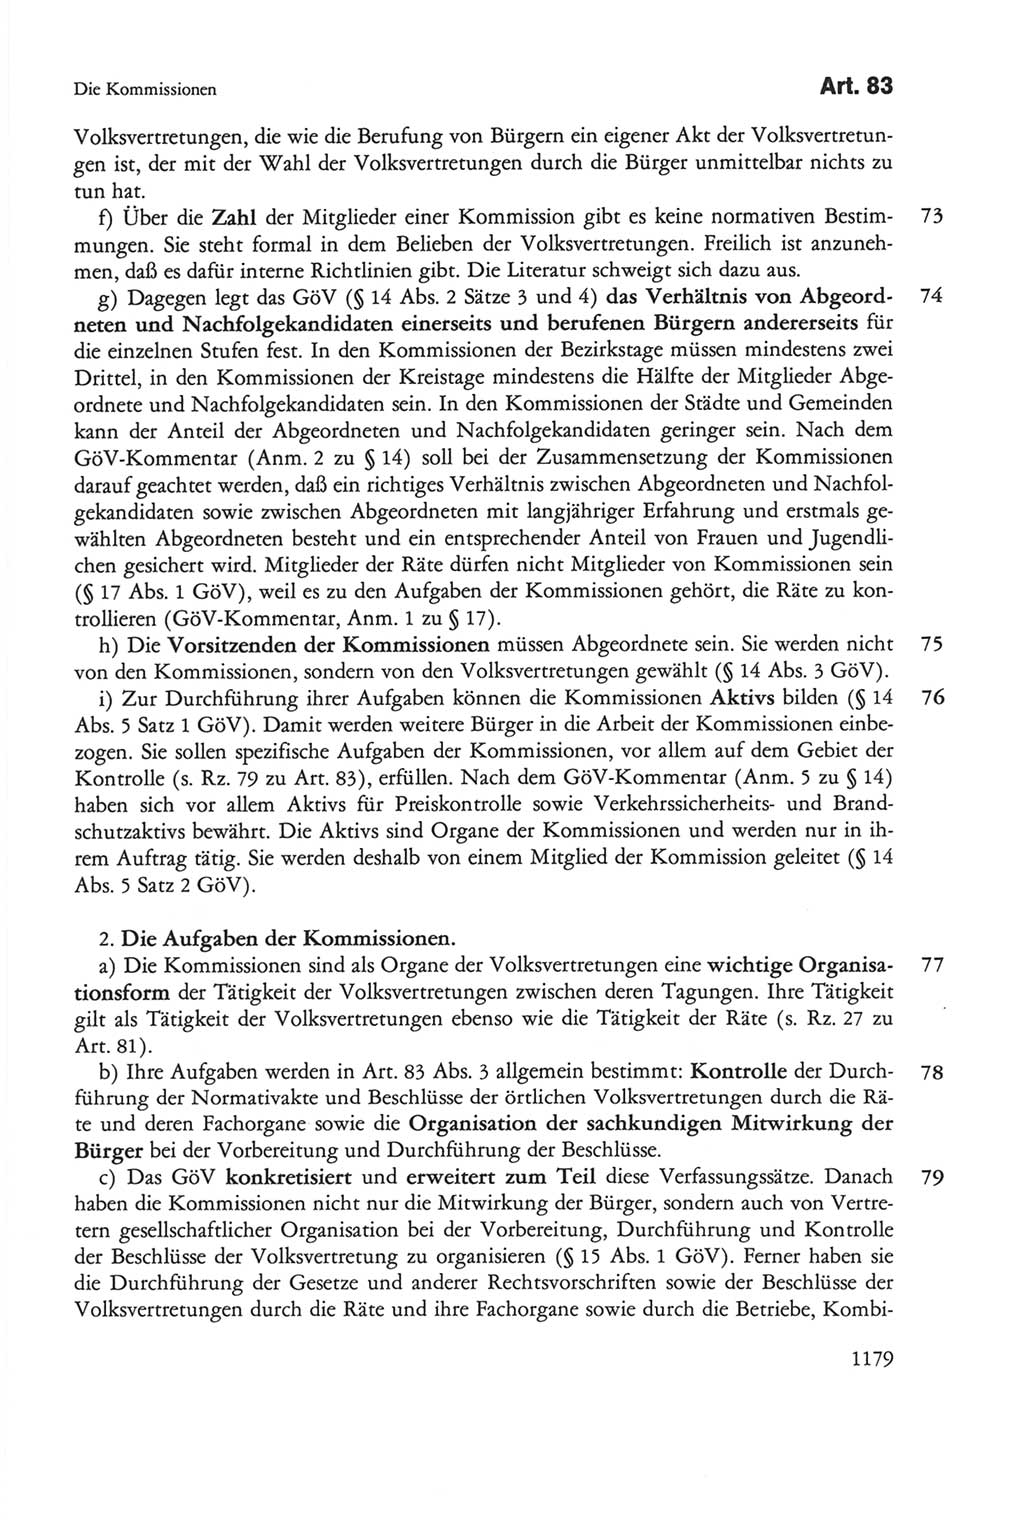 Die sozialistische Verfassung der Deutschen Demokratischen Republik (DDR), Kommentar mit einem Nachtrag 1997, Seite 1179 (Soz. Verf. DDR Komm. Nachtr. 1997, S. 1179)